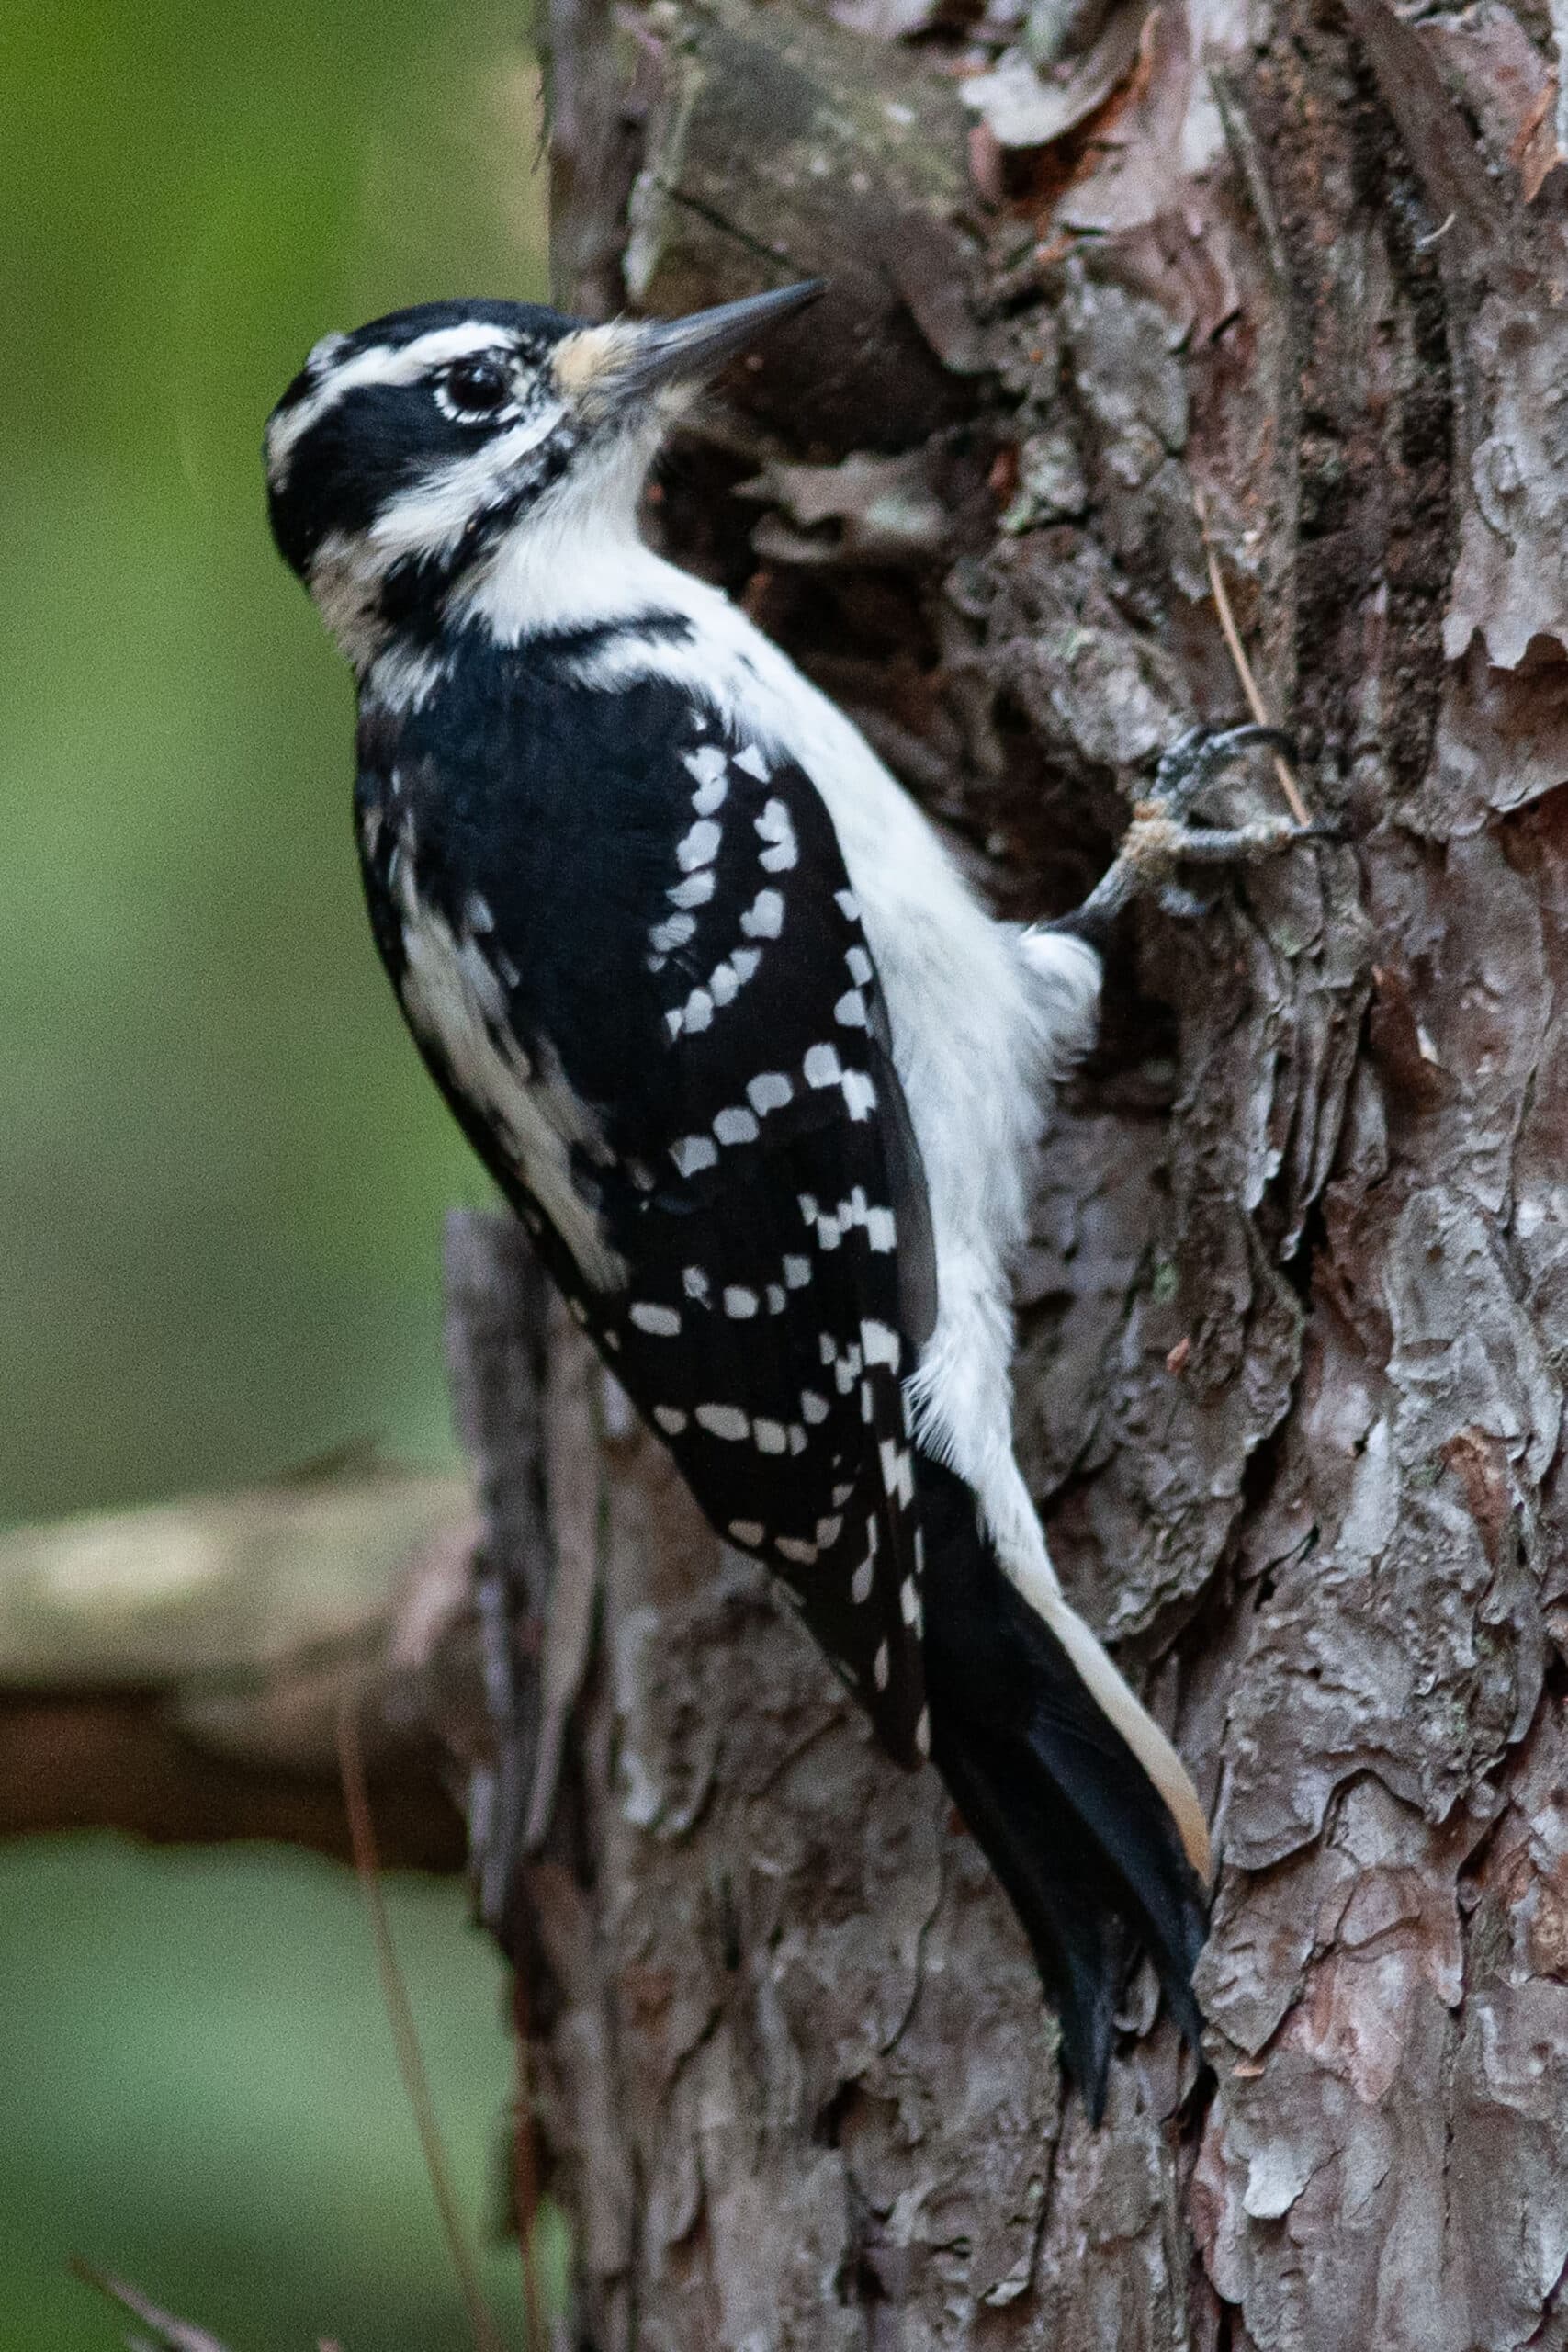 A woodpecker in a tree.